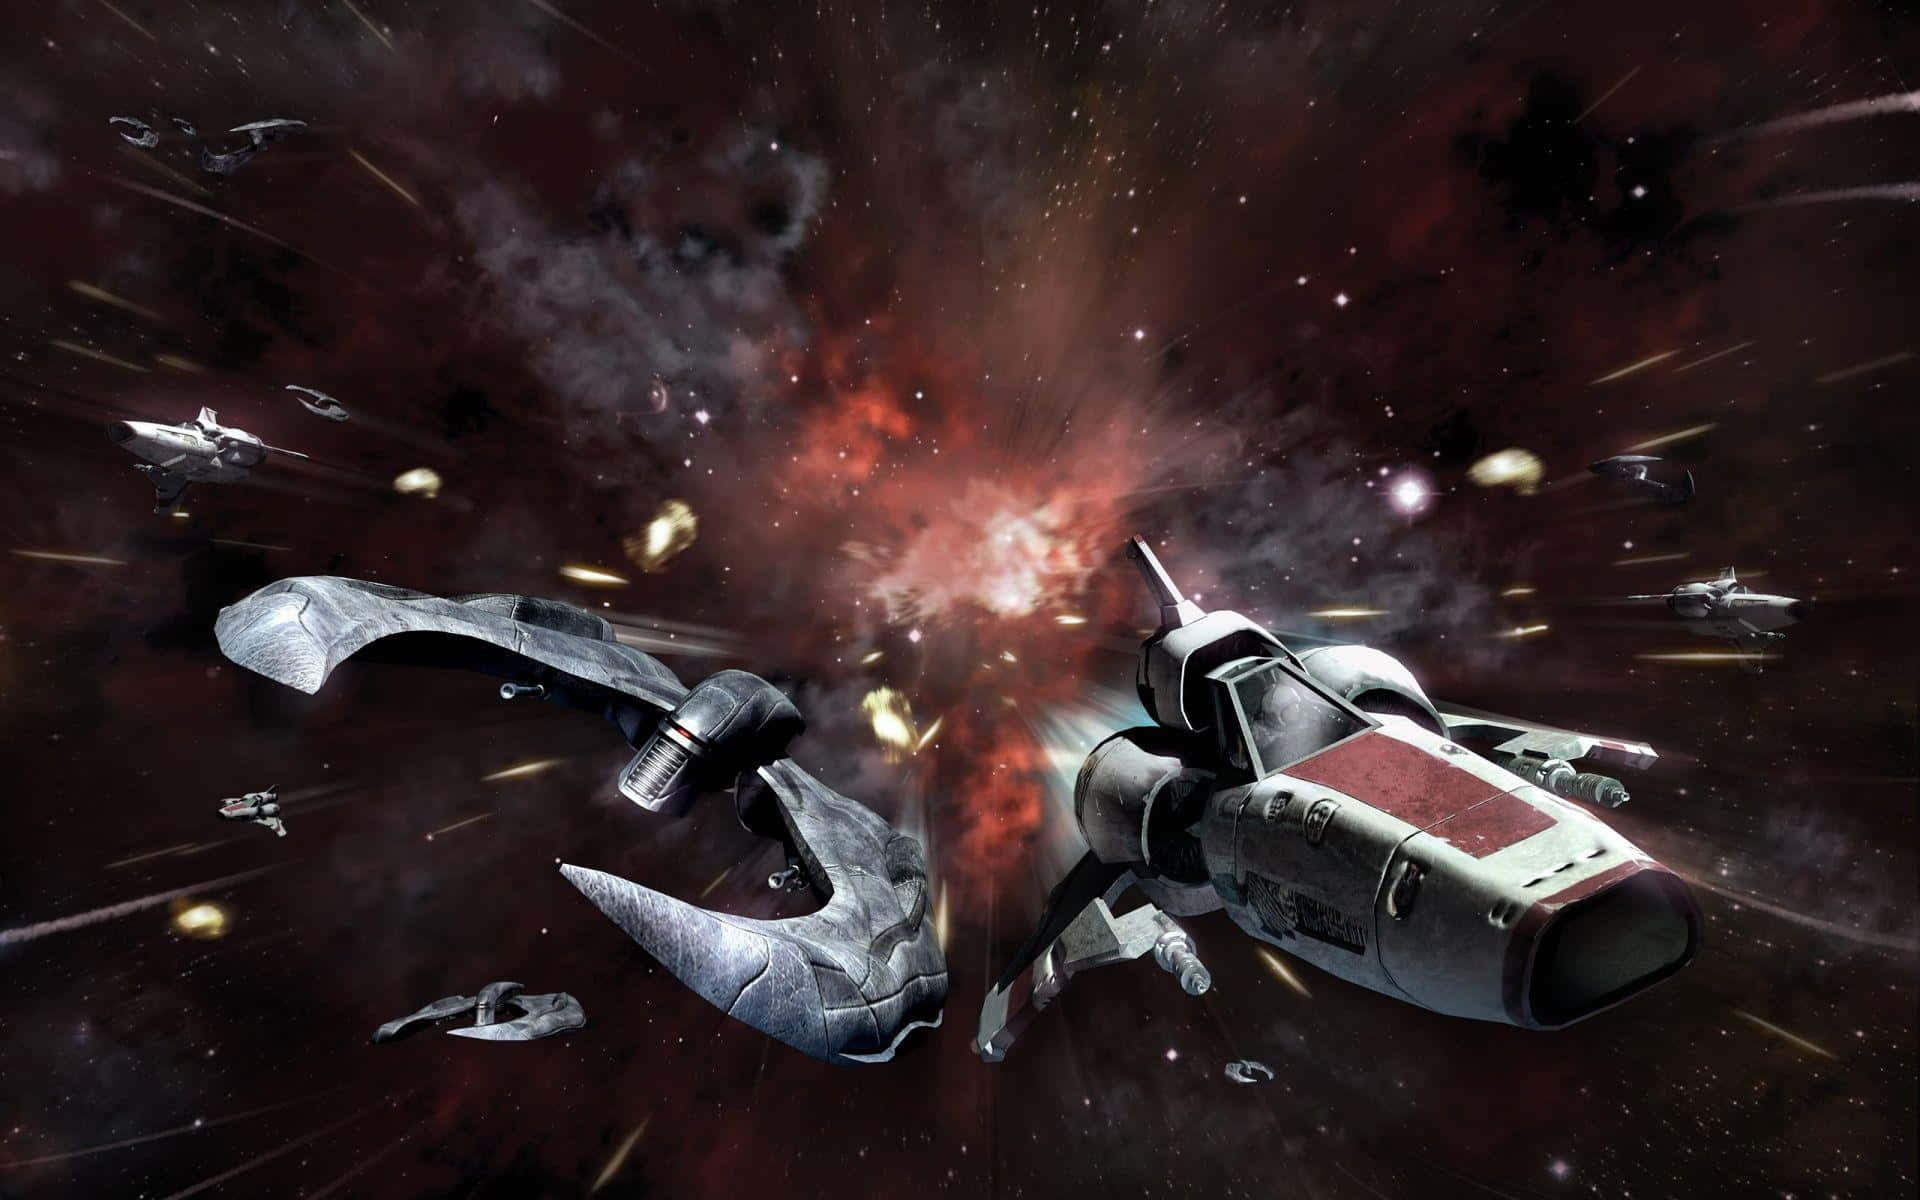 Unaicónica Batalla Espacial De La Épica Serie De Ciencia Ficción Battlestar Galactica. Fondo de pantalla